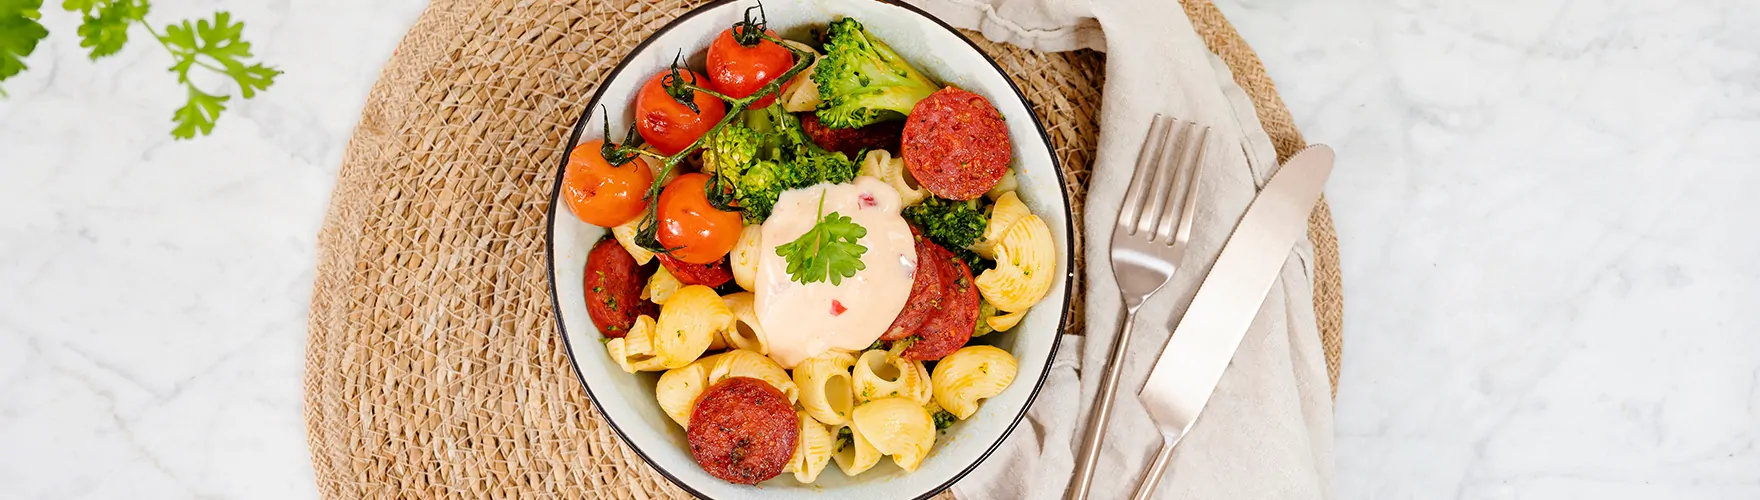 Romige pasta met pittige magere smeerkaas, chorizo, broccoli, cherrytomaten en peterselie